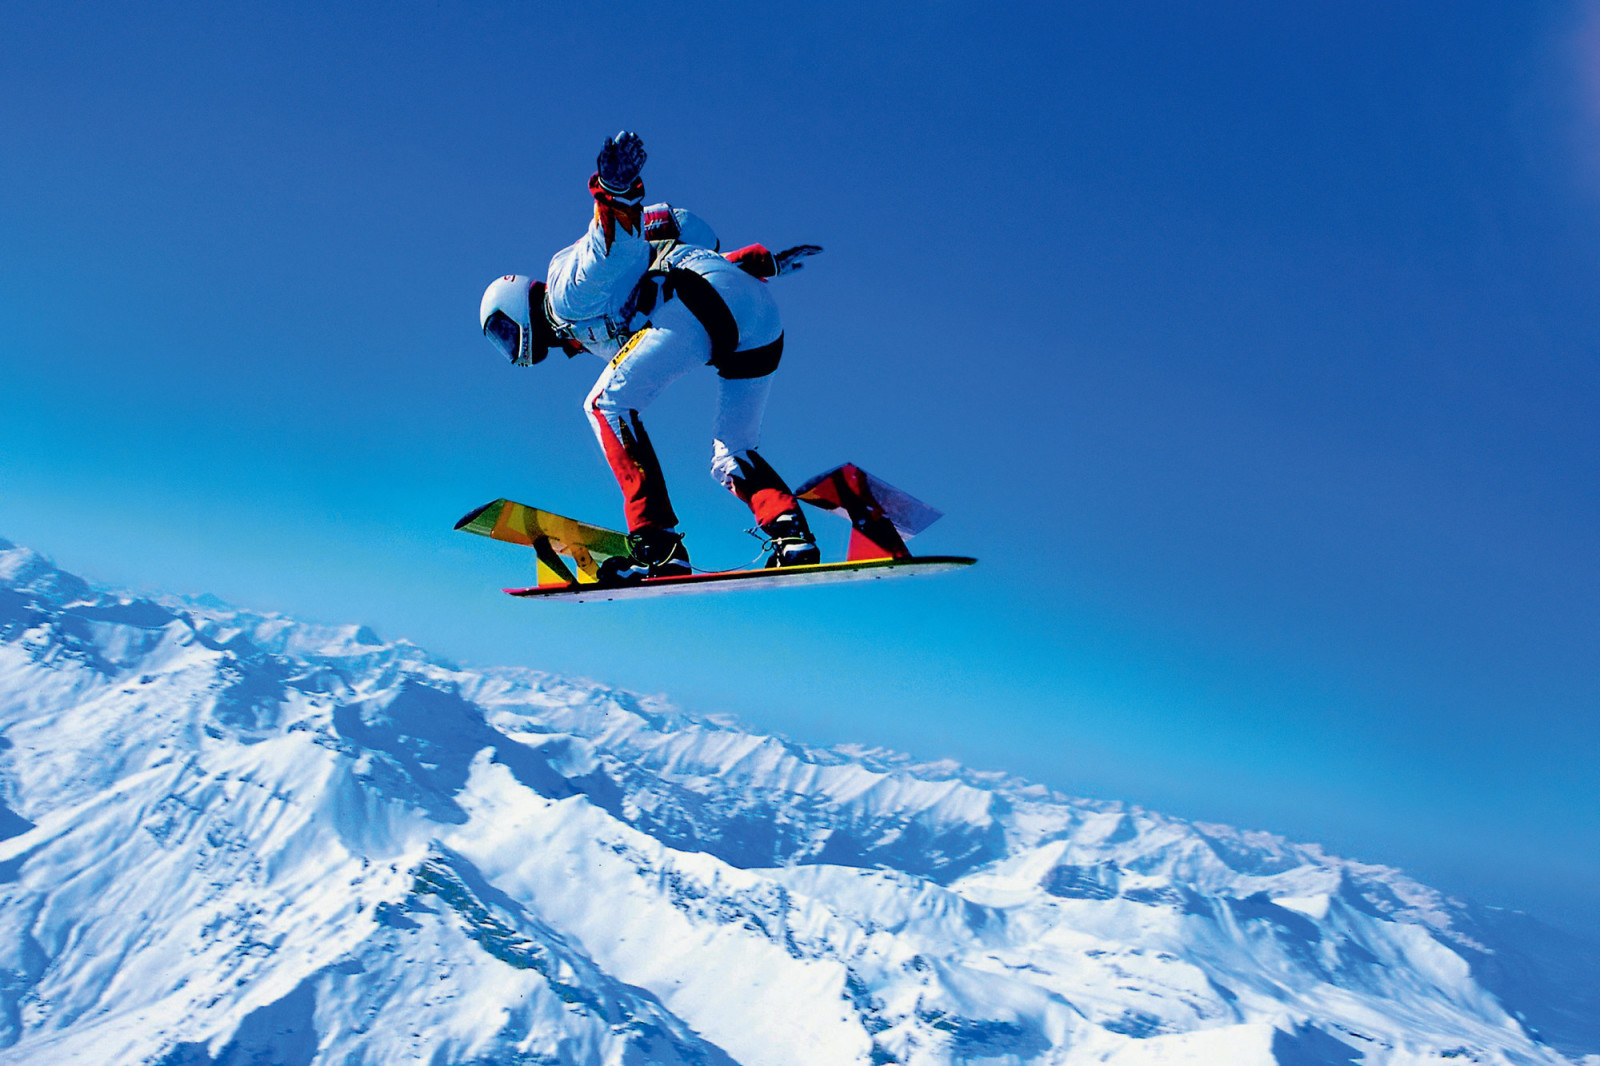 雪, 天空, 冬季, 山脉, 跳伞者, 降落伞, 跳伞, 滑浪风帆